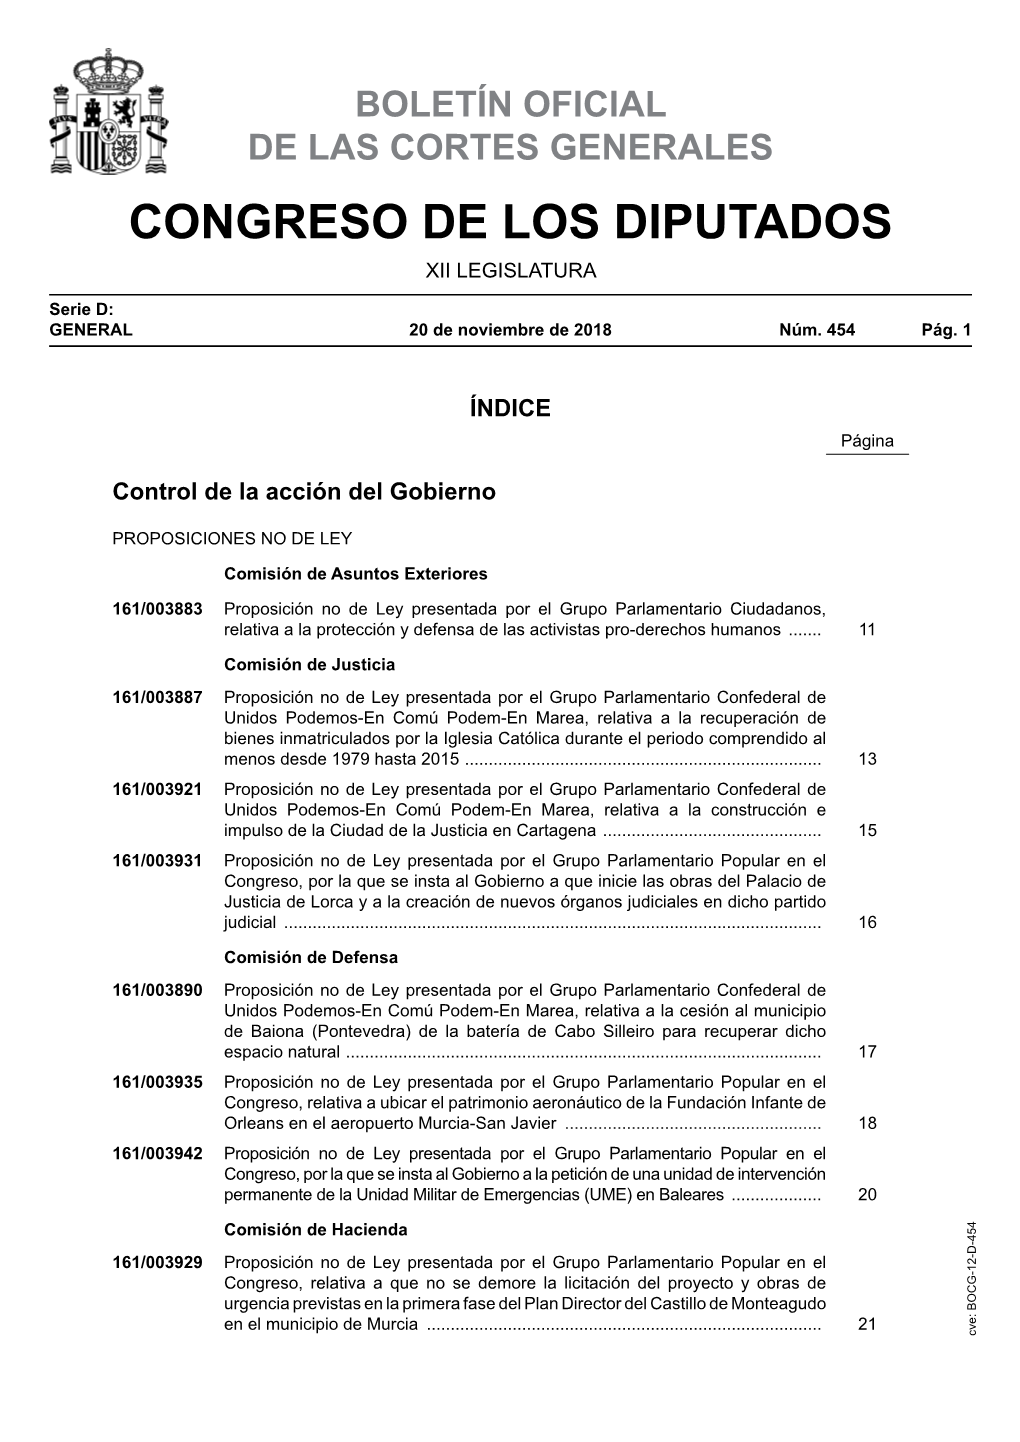 Proposición No De Ley Presentada Por El Grupo Parlamentario Ciudadanos, Relativa a La Protección Y Defensa De Las Activistas Pro-Derechos Humanos